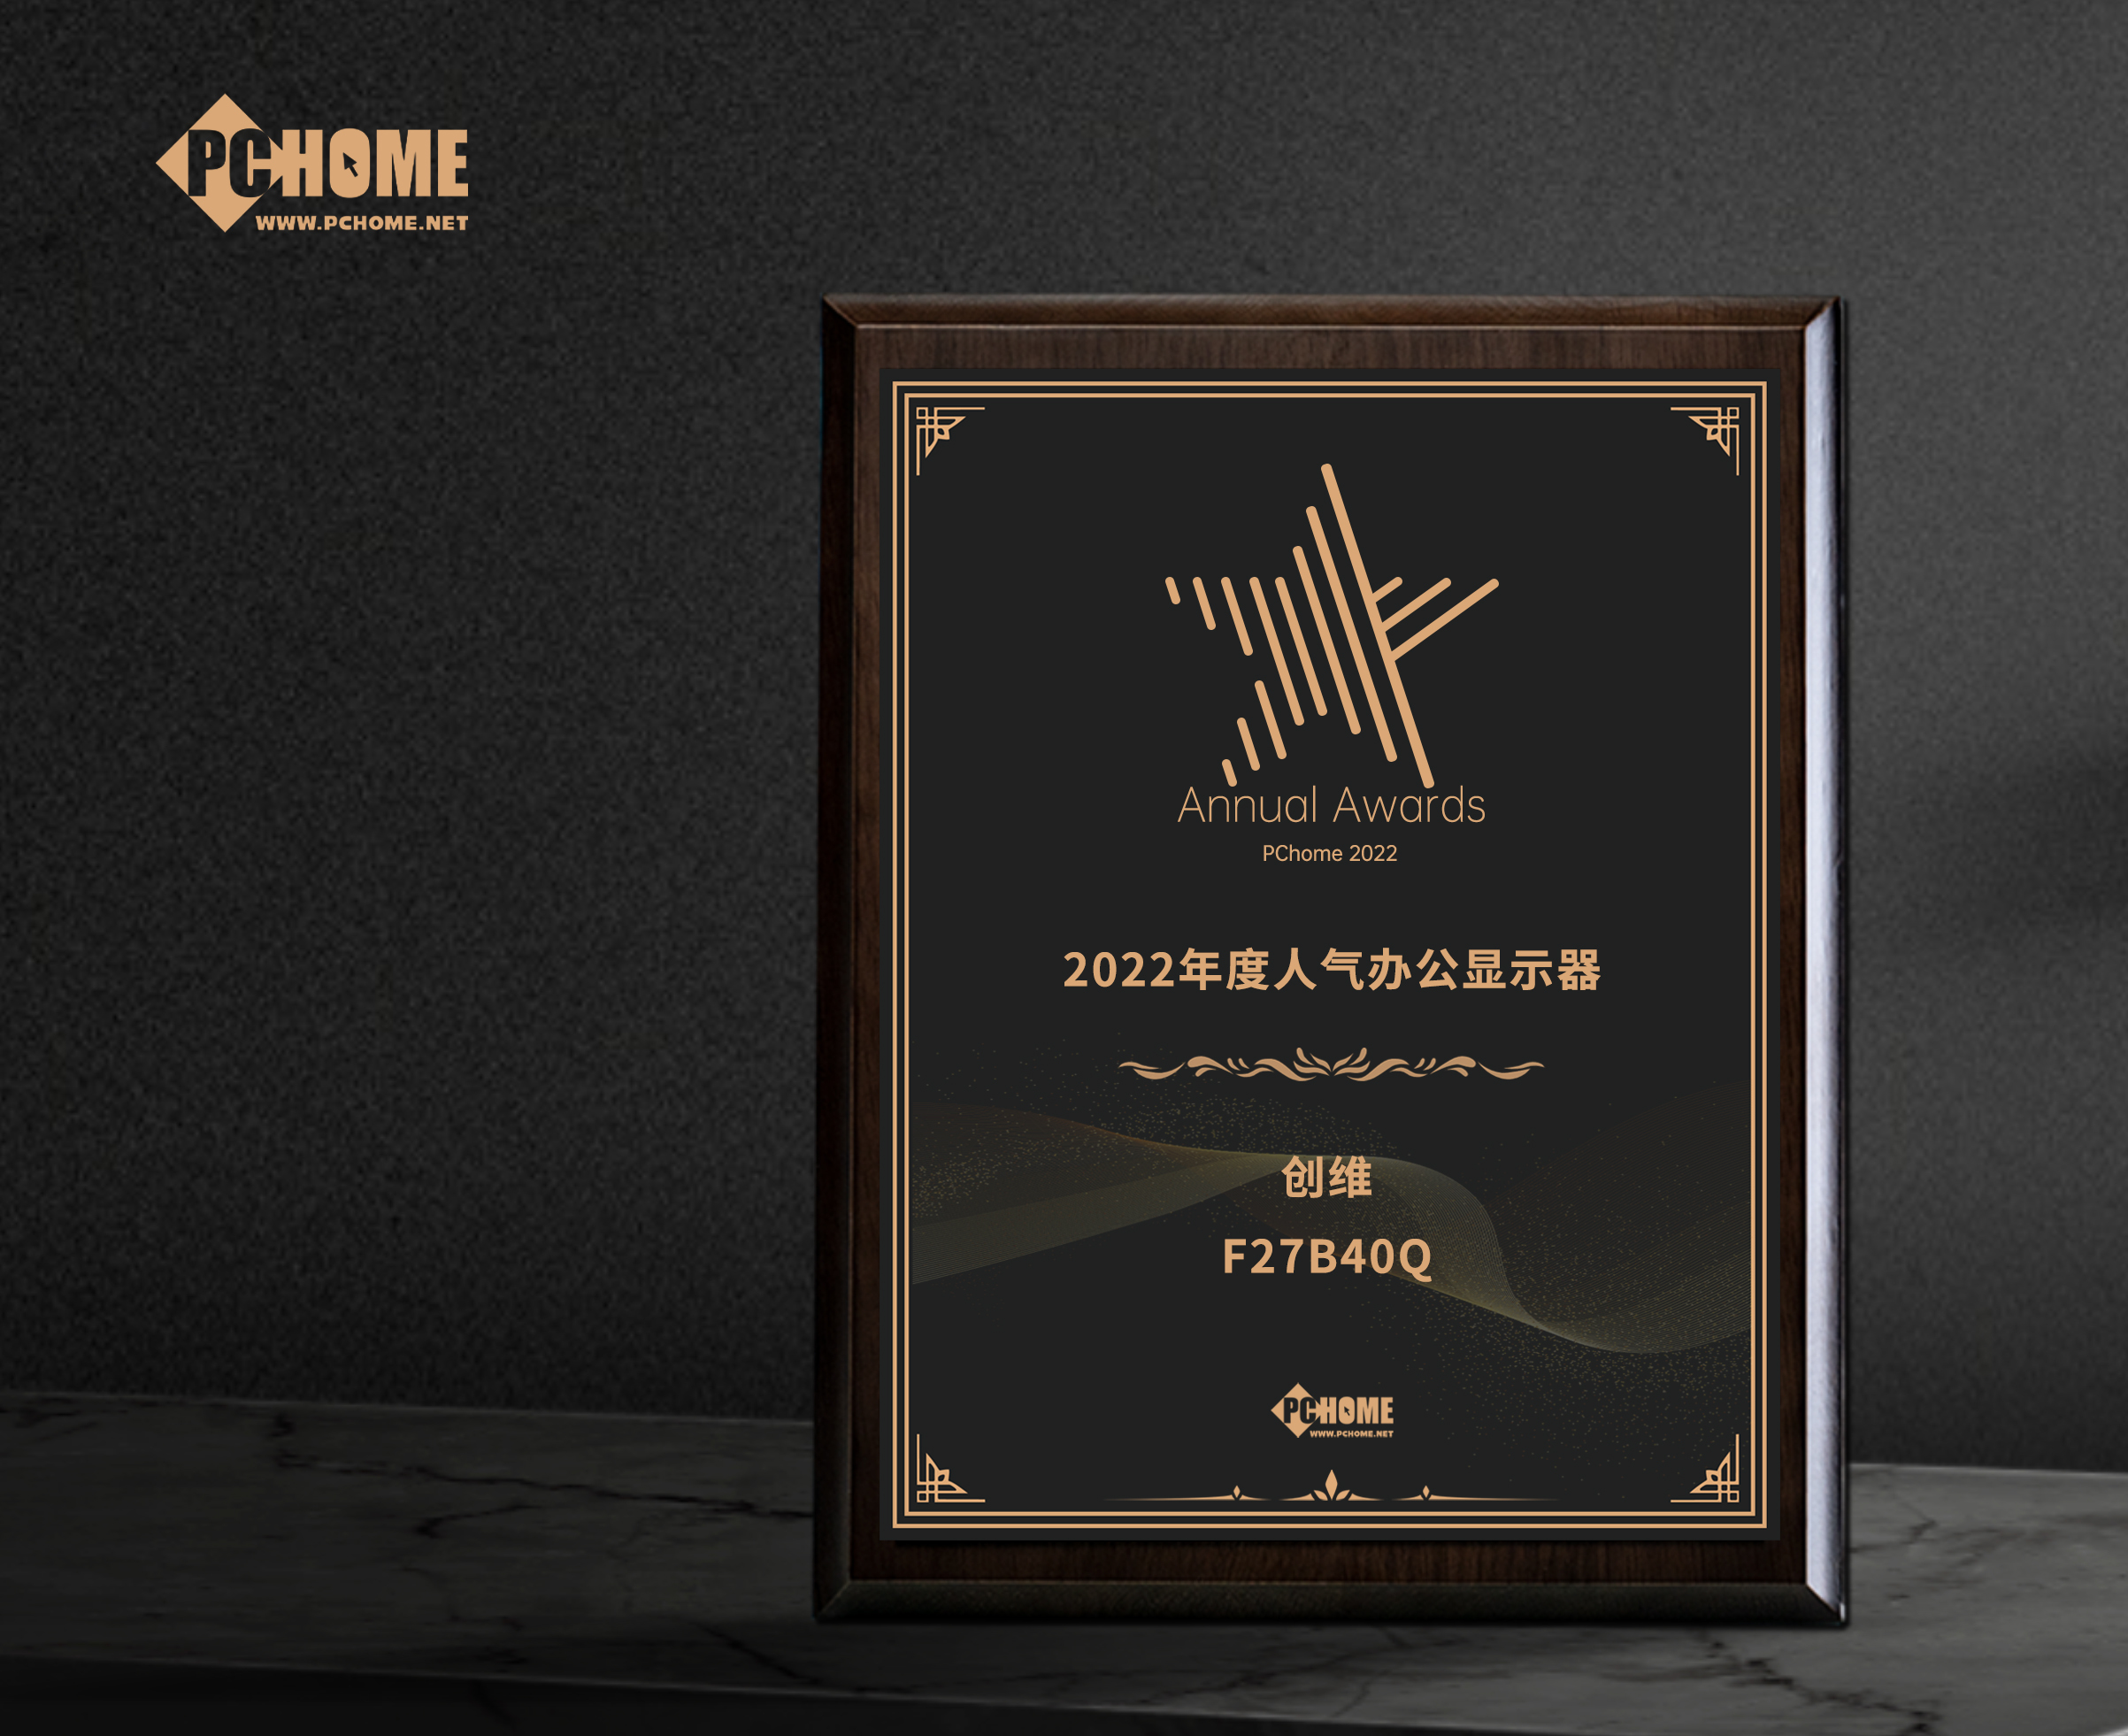 巴中市創維F27B40Q獲得PChome2022年度人氣辦公顯示器獎項